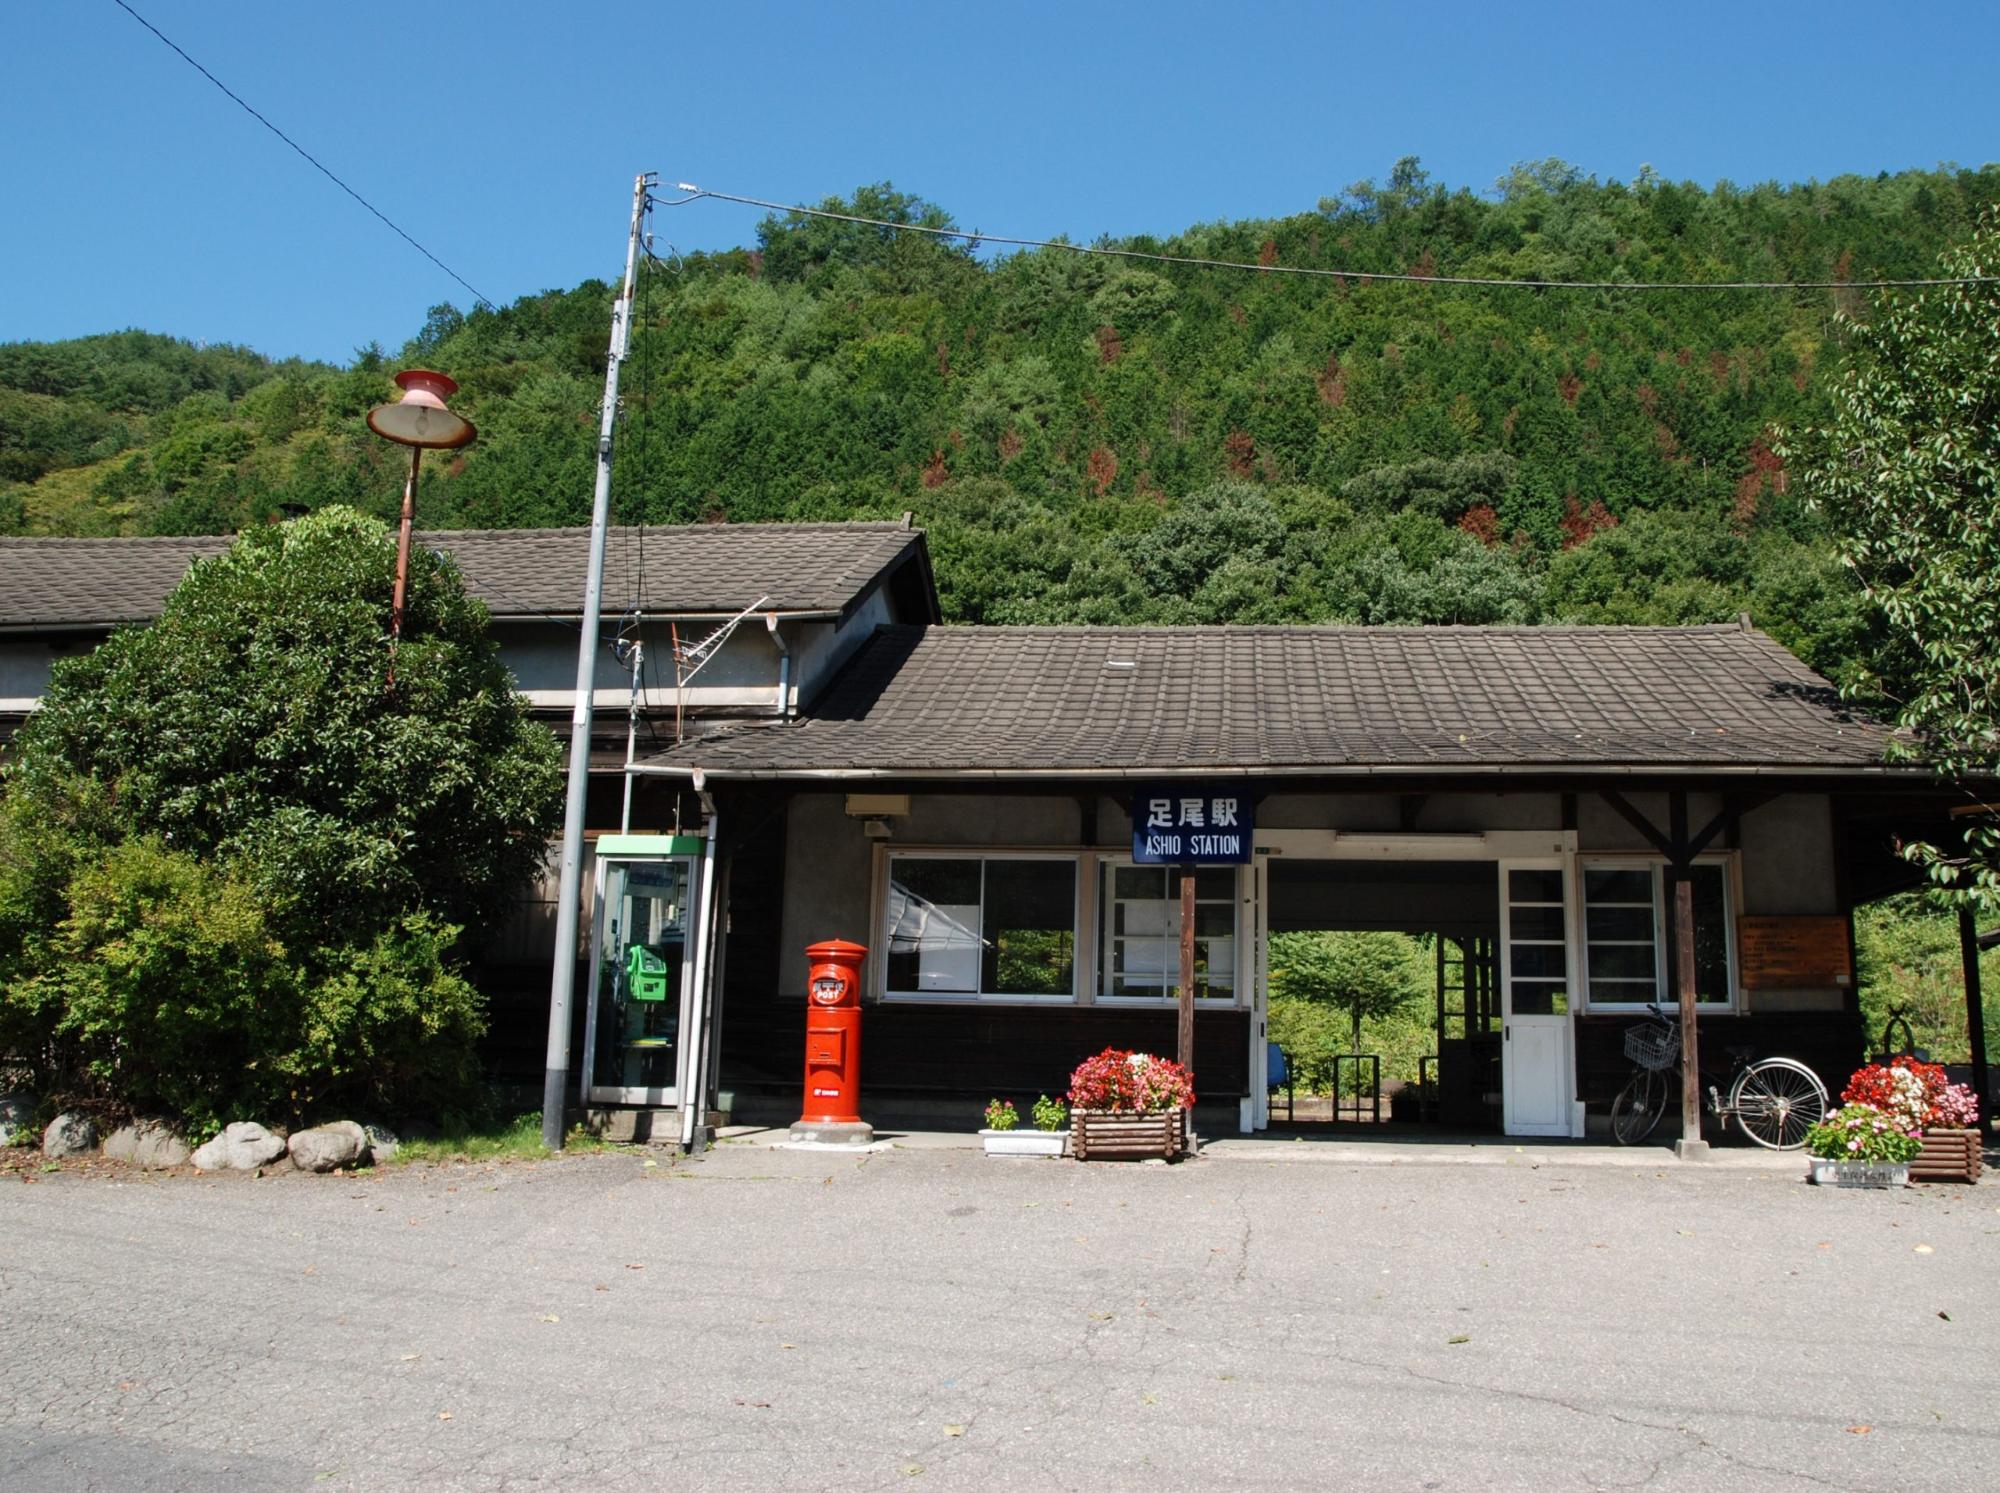 入口に赤い丸型ポストがあり、大きな緑の木の横に建っている木造でできた足尾駅の写真